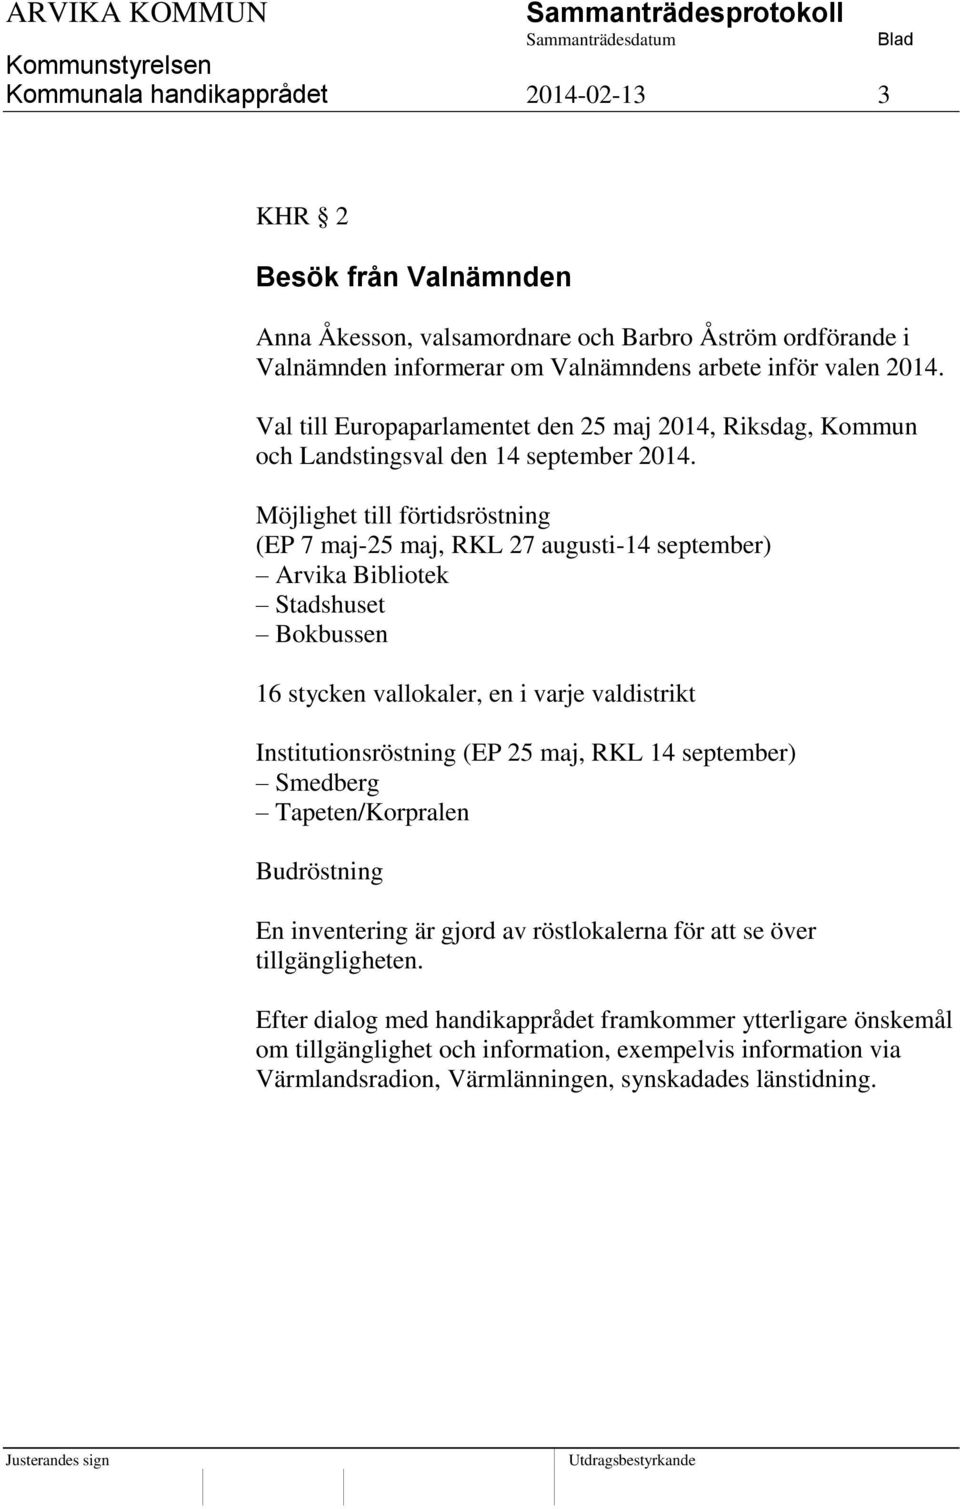 Möjlighet till förtidsröstning (EP 7 maj-25 maj, RKL 27 augusti-14 september) Arvika Bibliotek Stadshuset Bokbussen 16 stycken vallokaler, en i varje valdistrikt Institutionsröstning (EP 25 maj, RKL